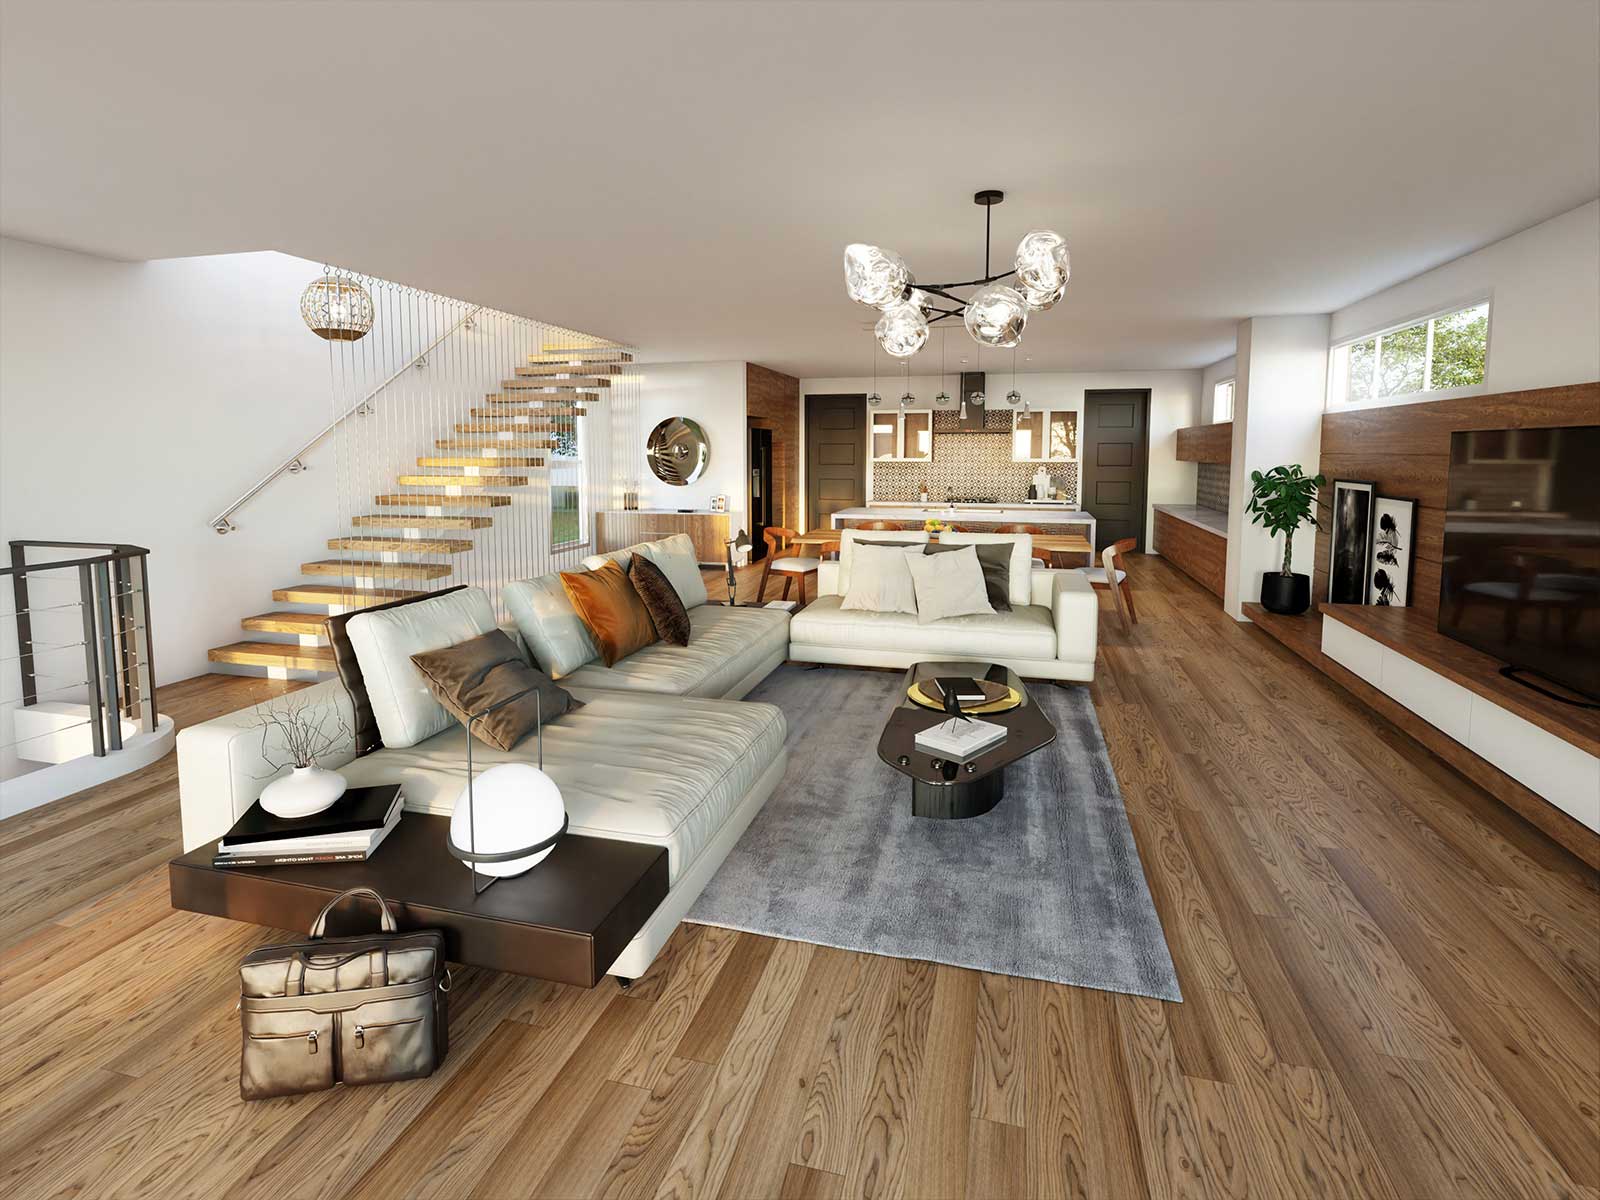 Affordable Architectural Visualization Service Living Room Daytime 3D Interior Render Sydney